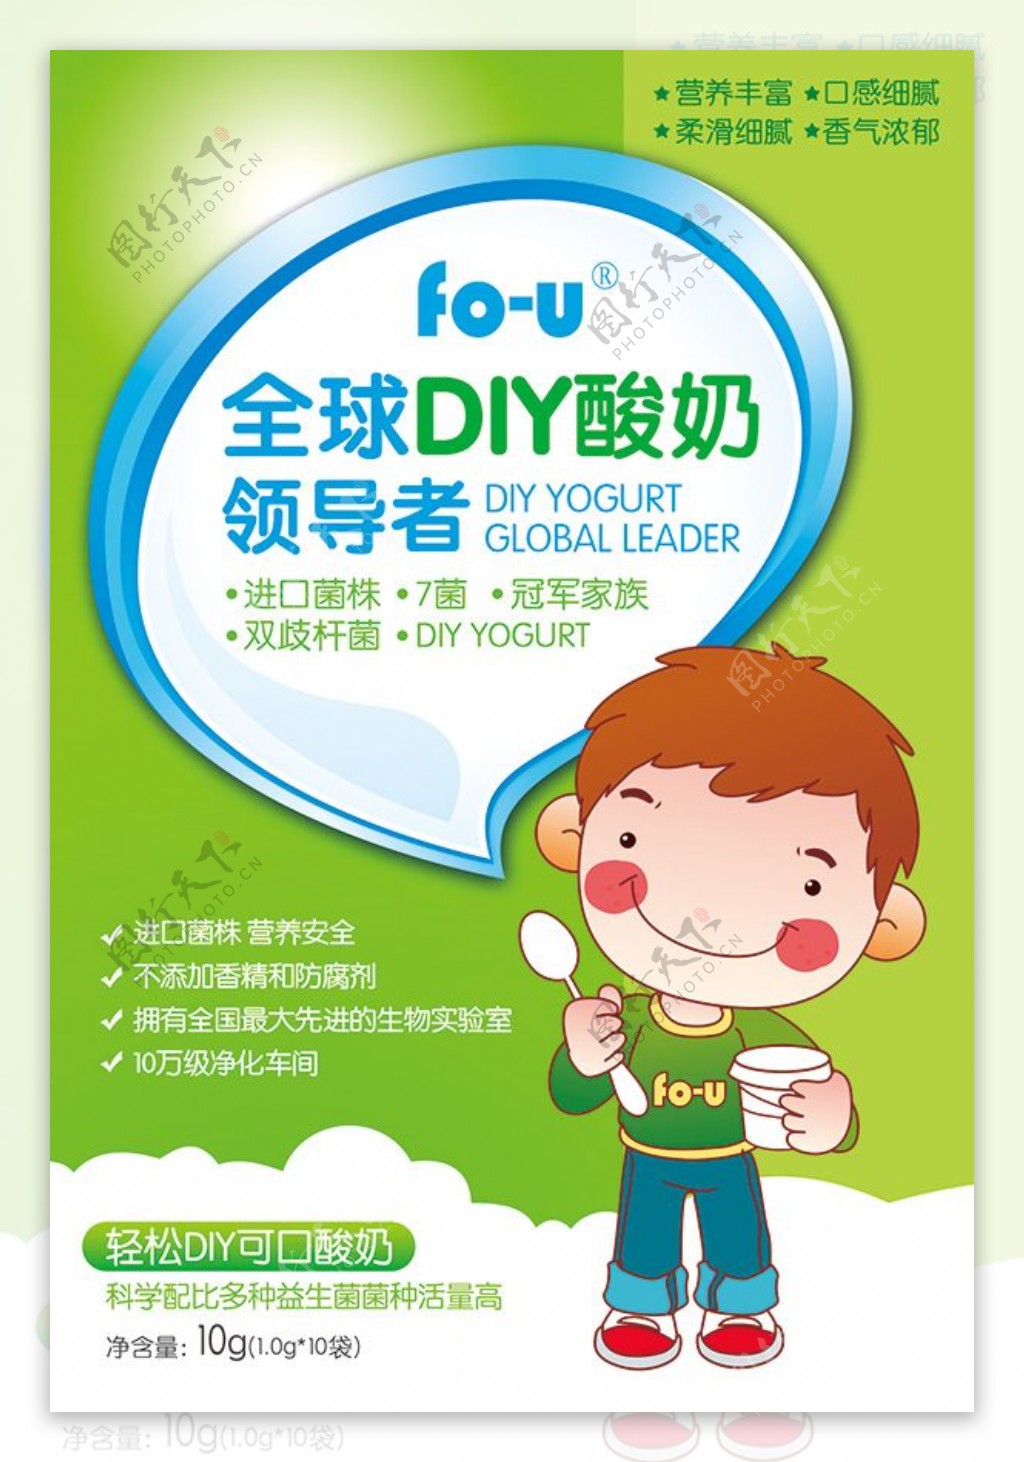 全球DIY酸奶领导者包装